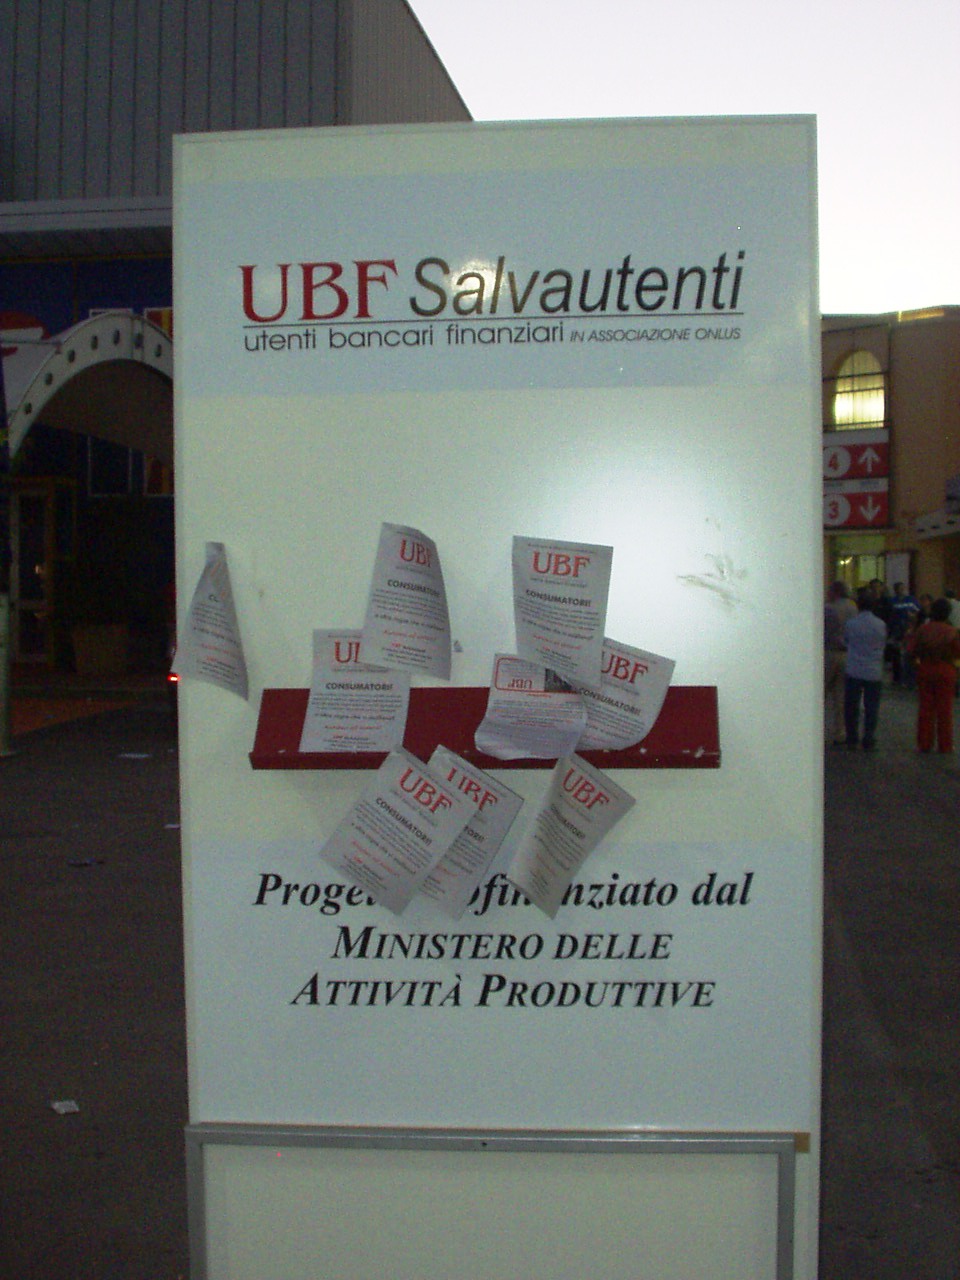 Totem dell'UBF all'interno della Fiera del Levante in prossimità dello stand dell'UBF